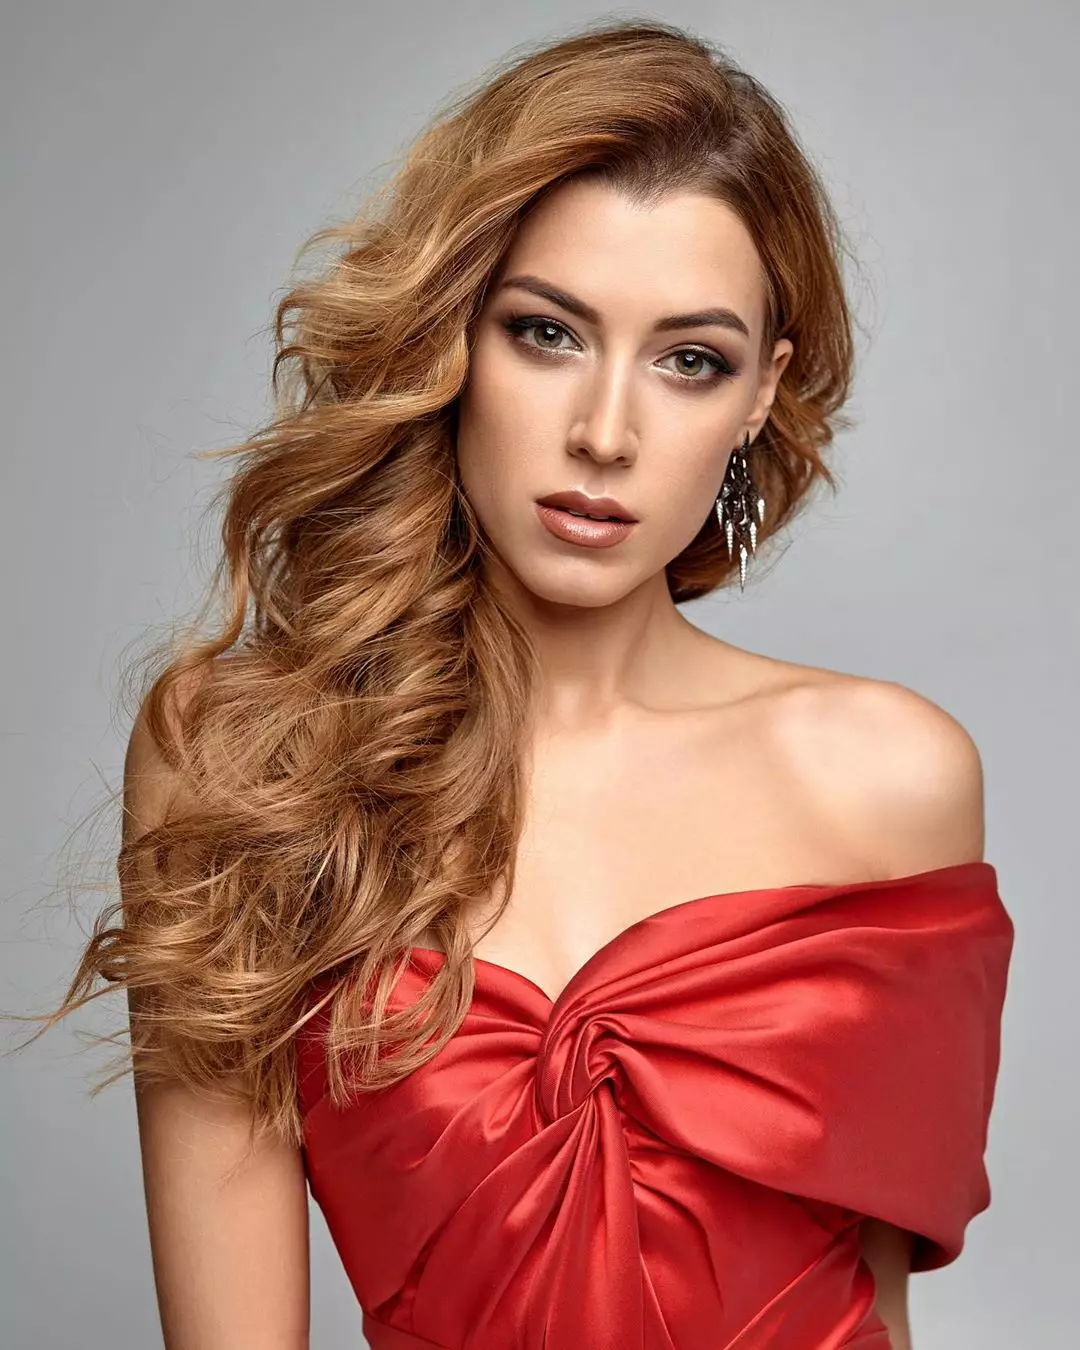 "Мисс Вселенная Украина" Анастасия Суббота